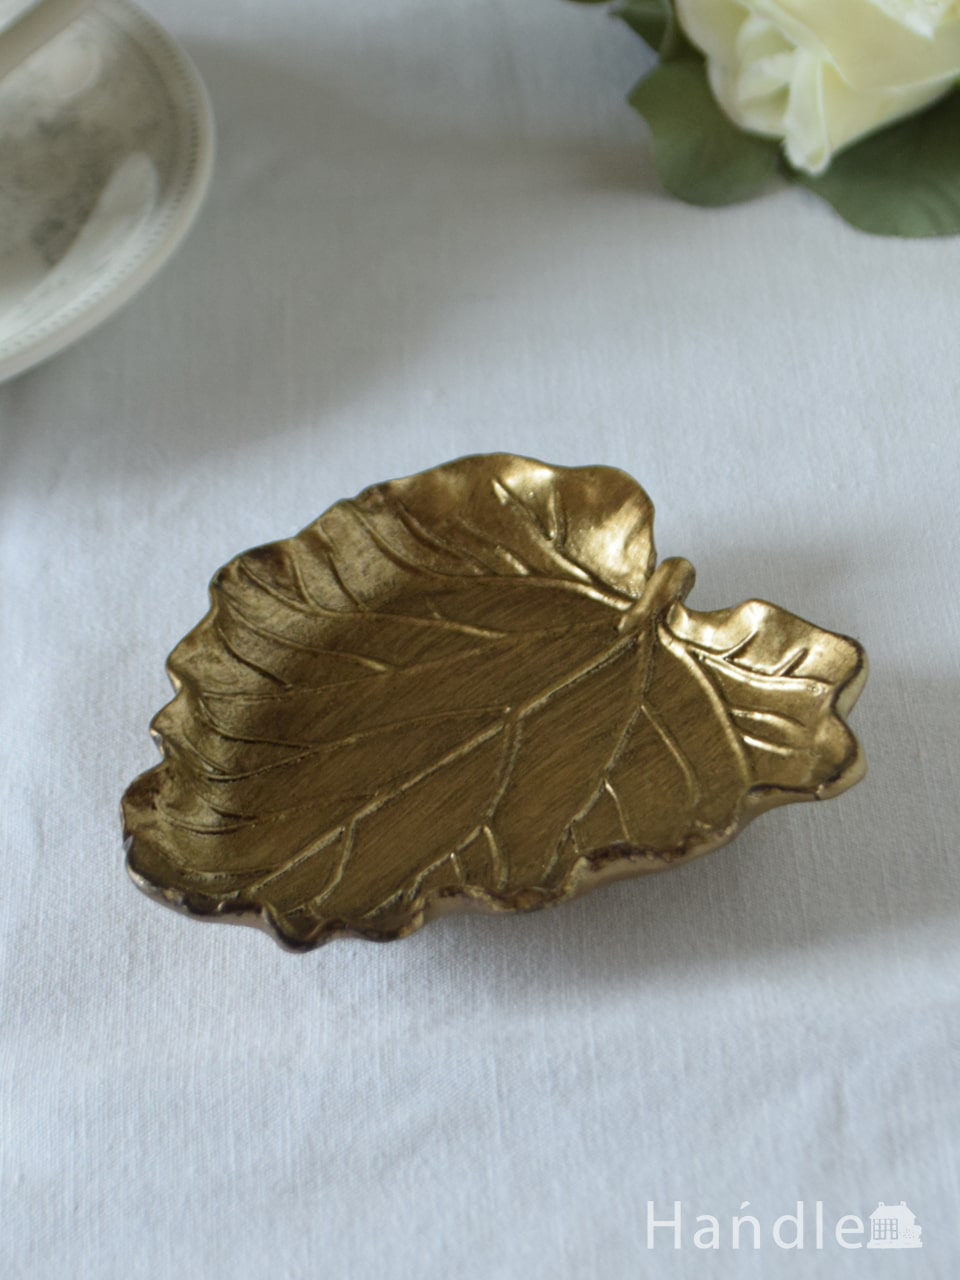 アンティーク調のおしゃれな雑貨、葉っぱの形のゴールドのアクセサリートレイ (n12-455)